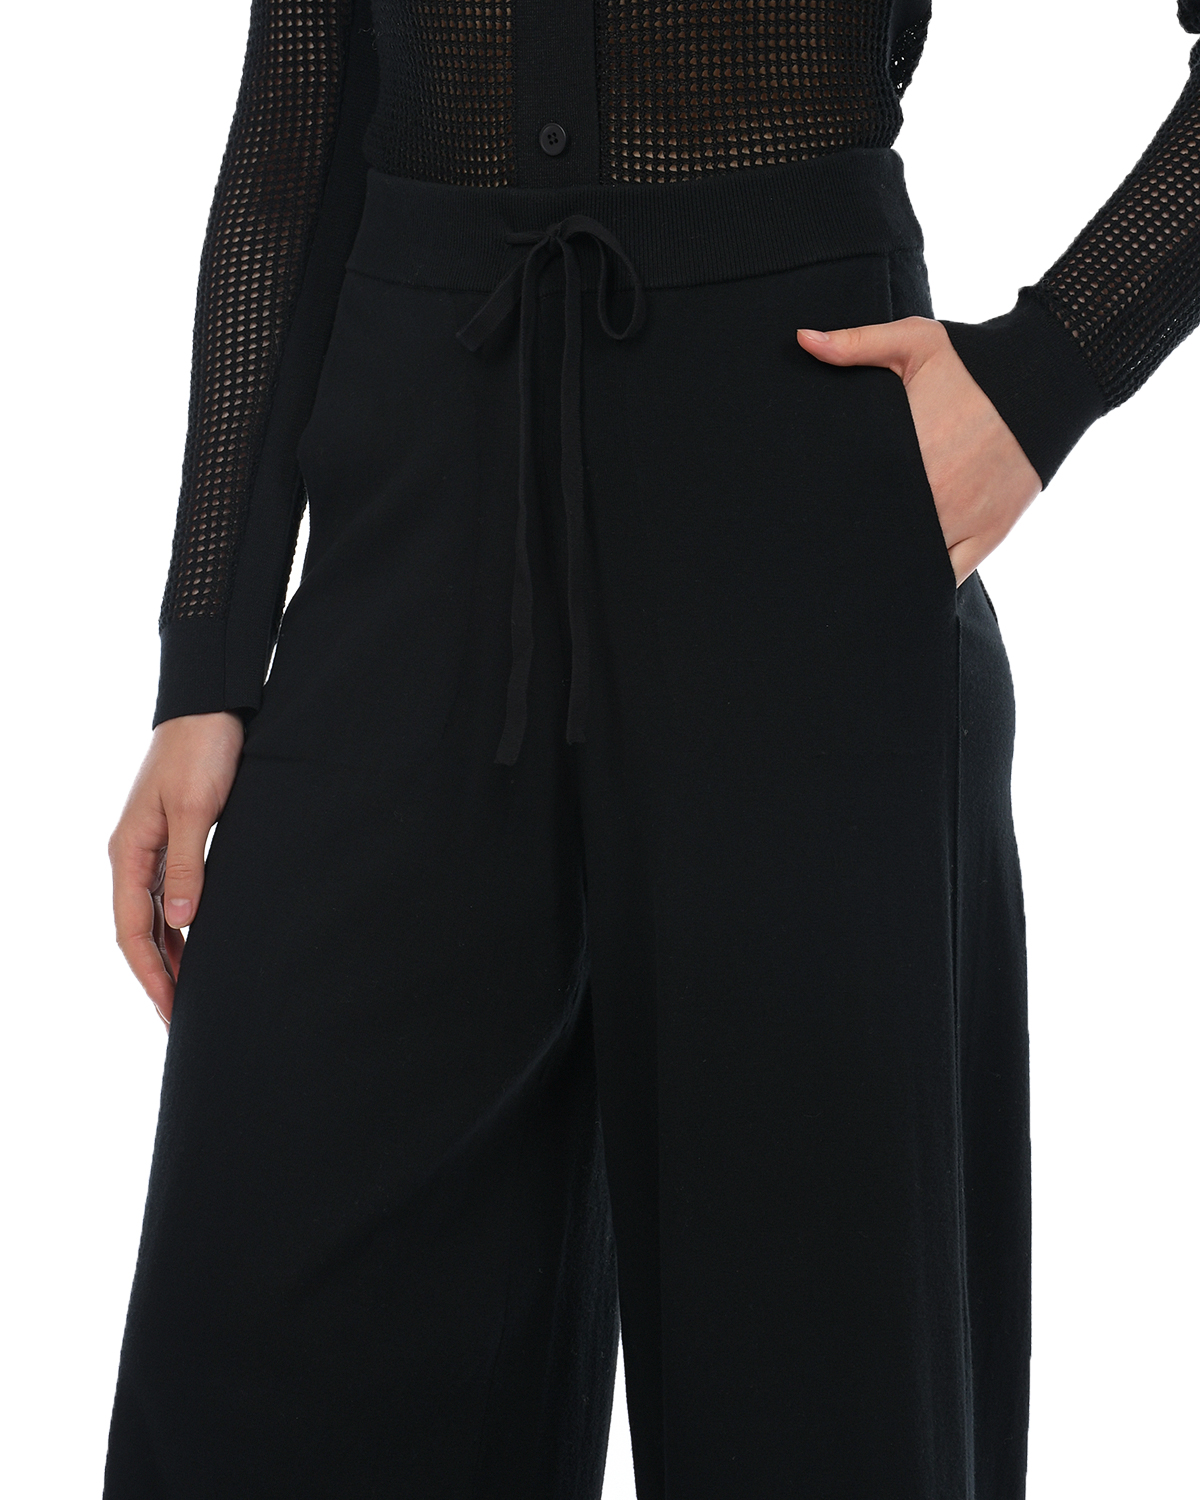 Черные трикотажные брюки-палаццо Dorothee Schumacher, размер 44, цвет черный - фото 8